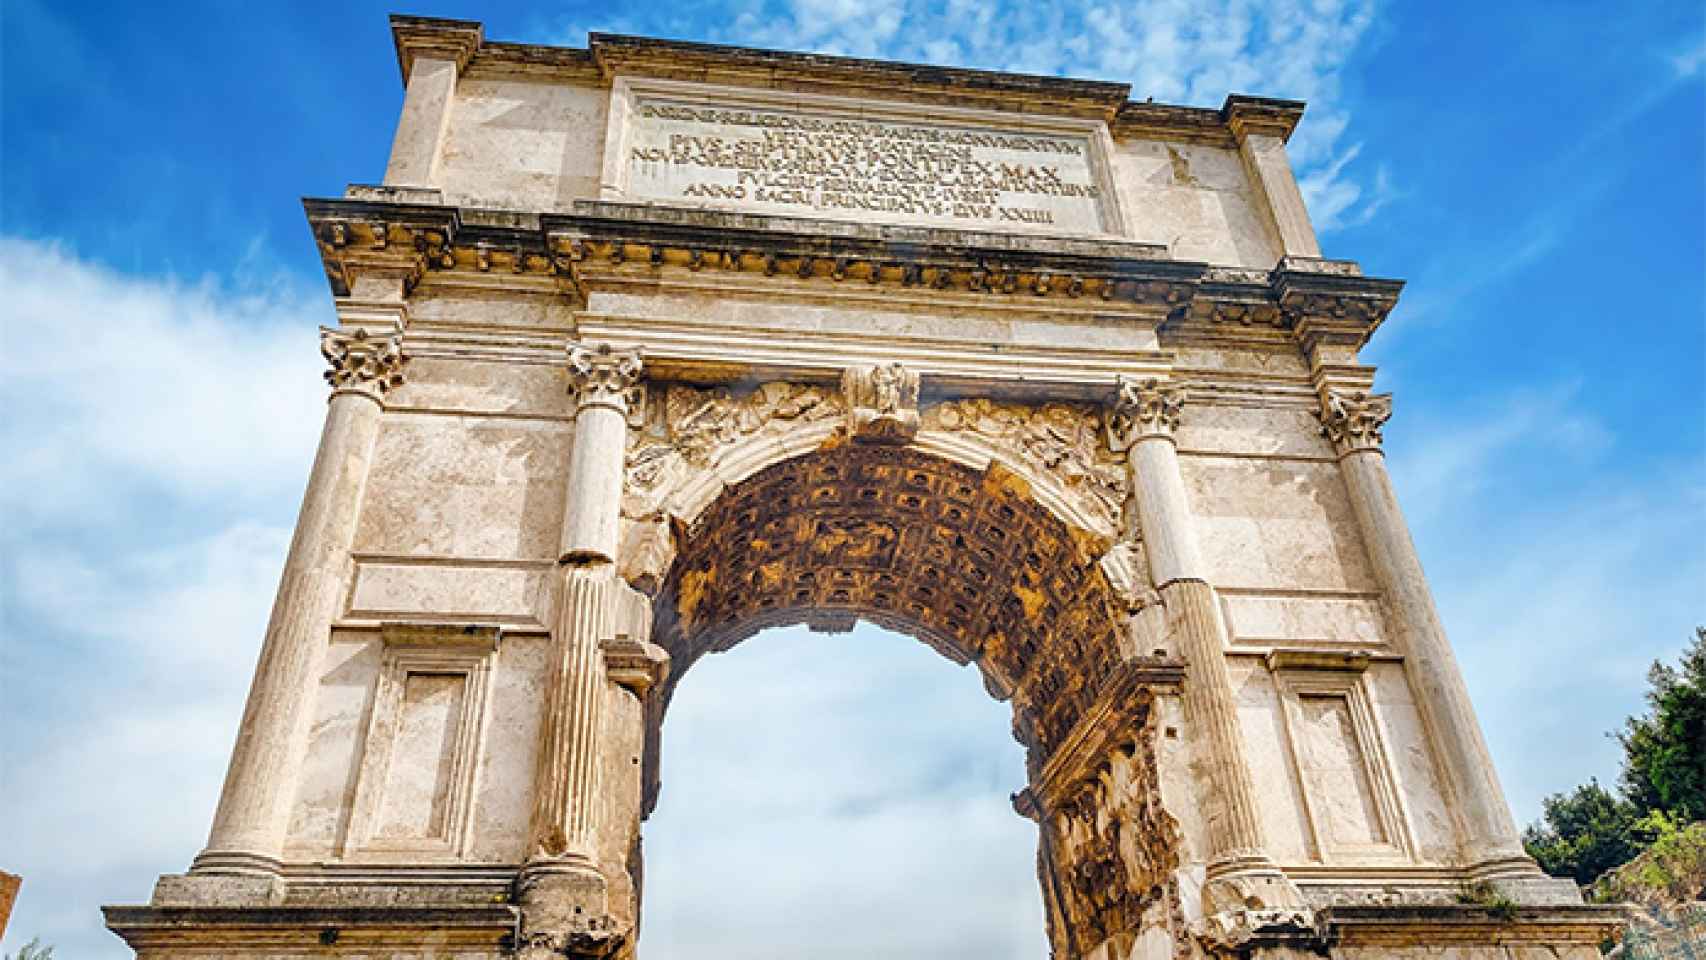 Arco de Tito, monumento romano en la capital italiana